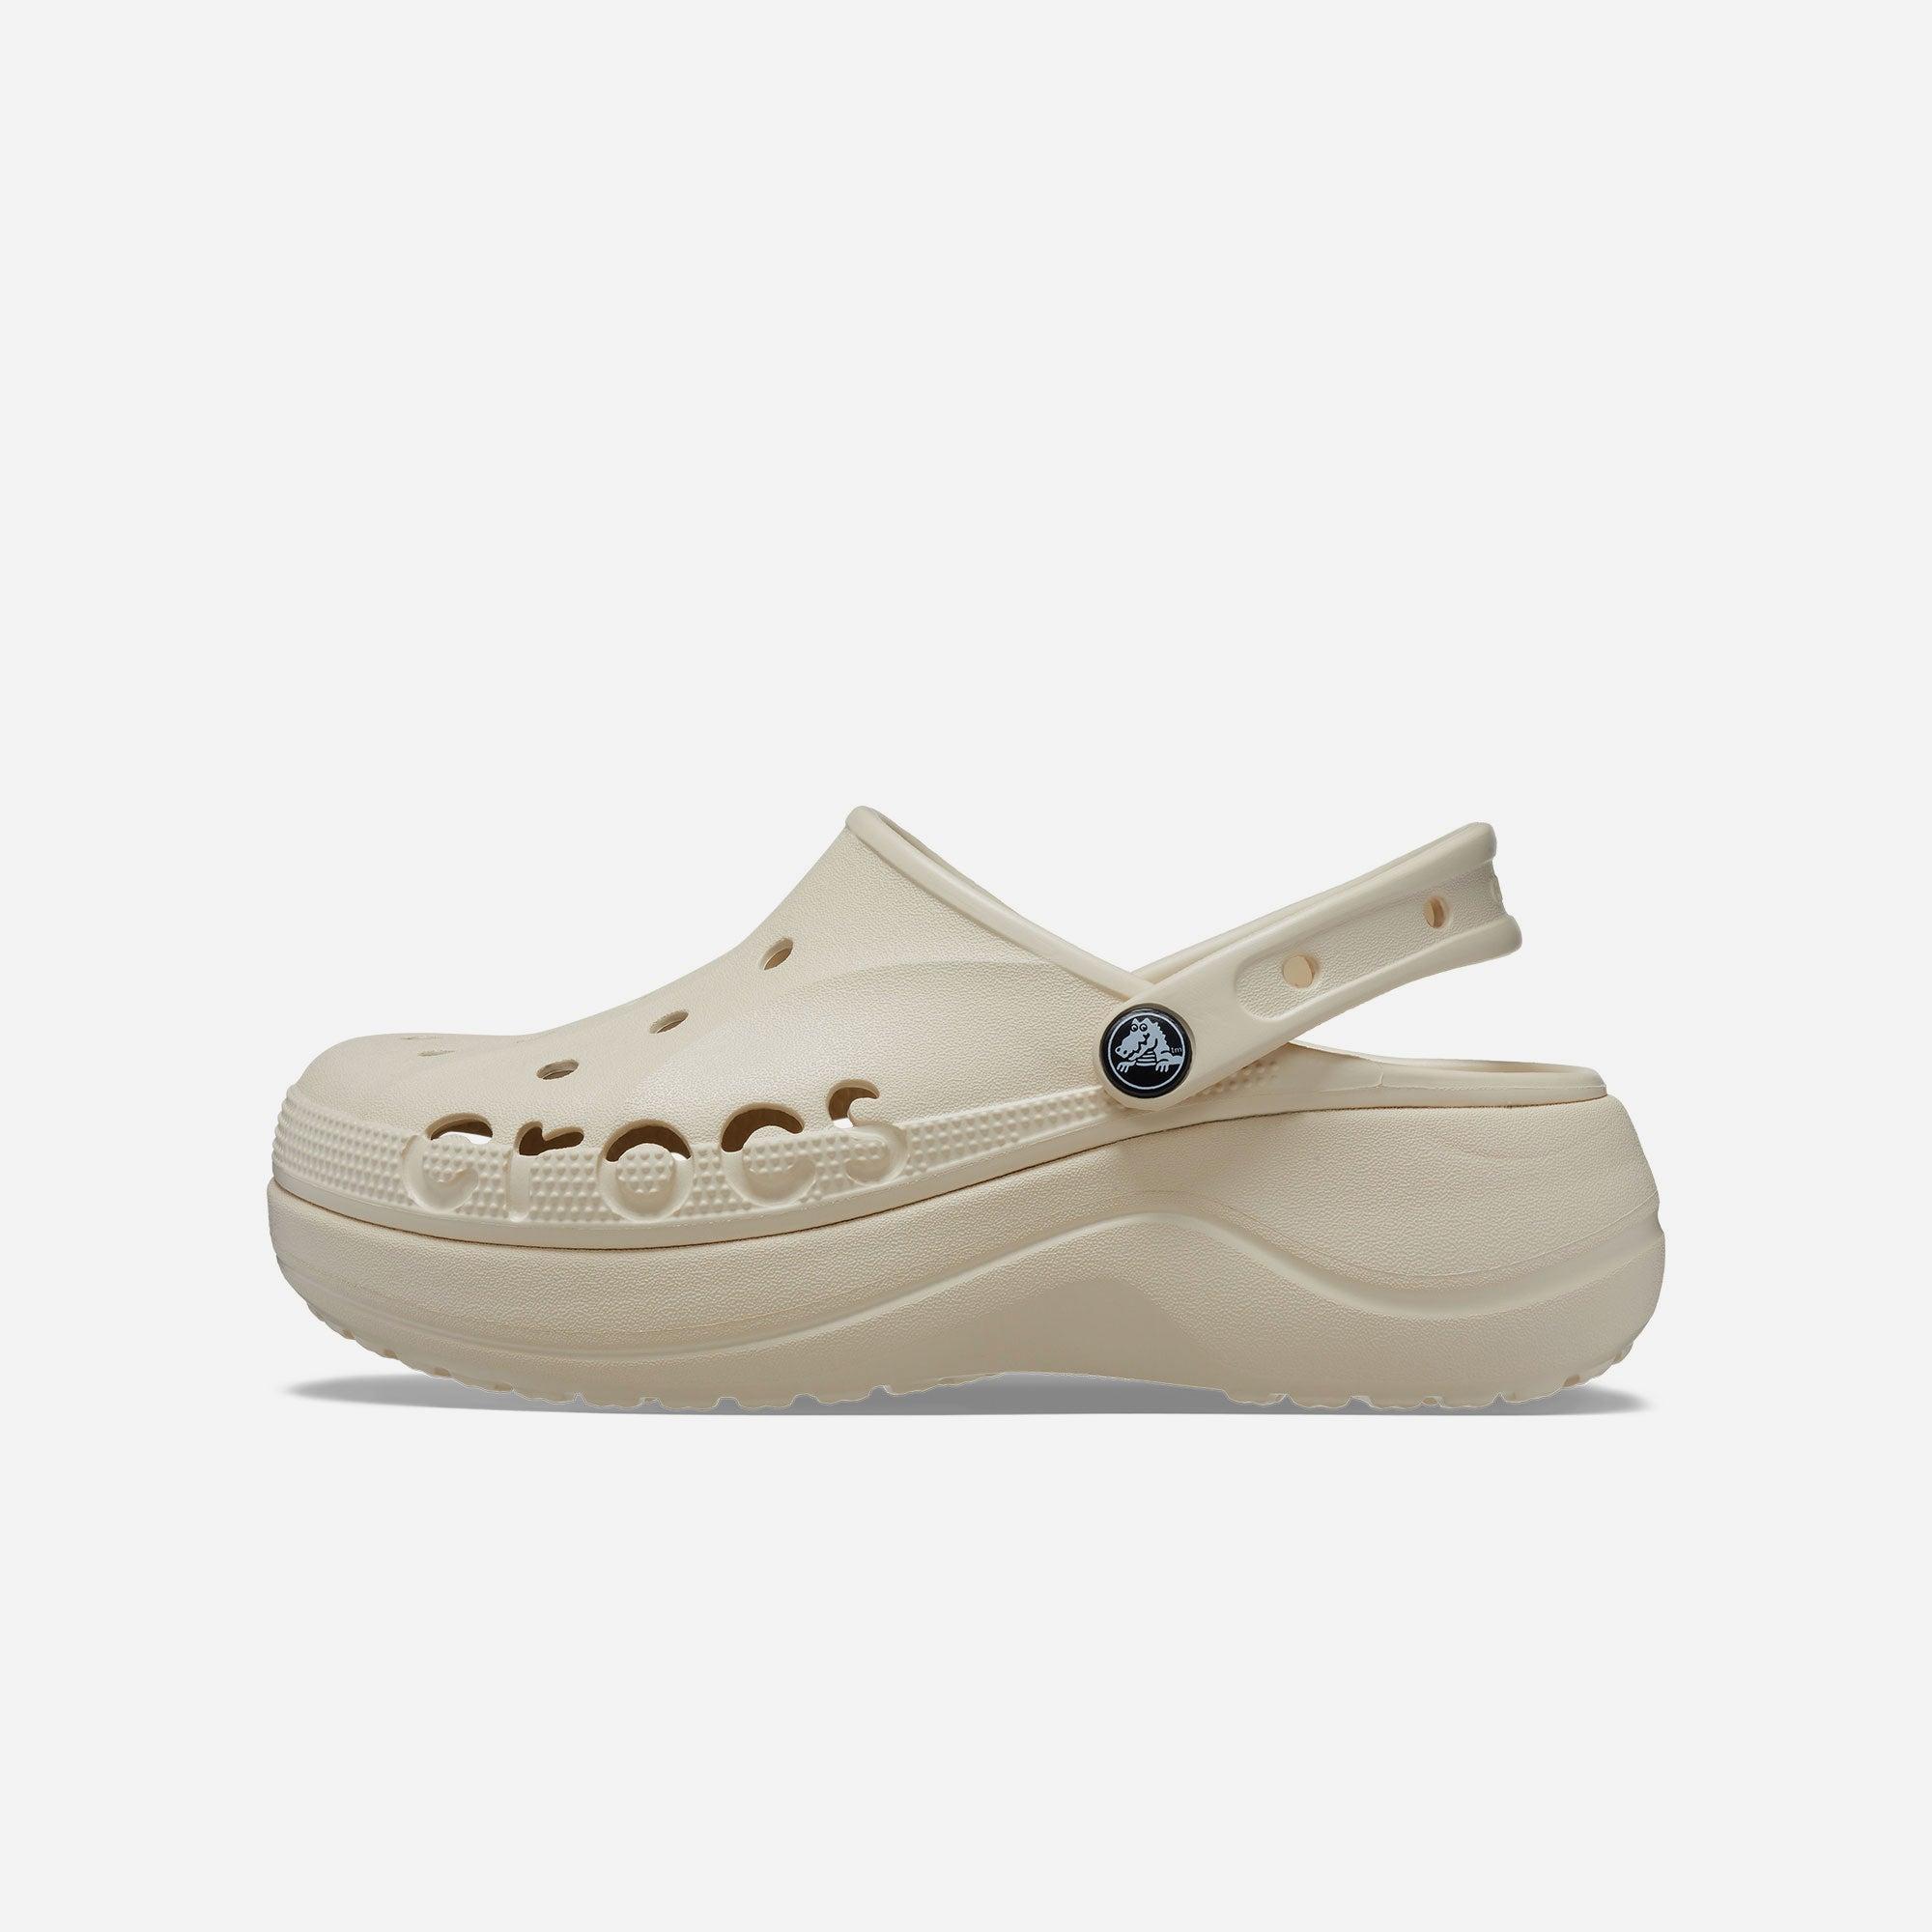 Giày nhựa nữ Crocs Baya Platform - 208186-11S